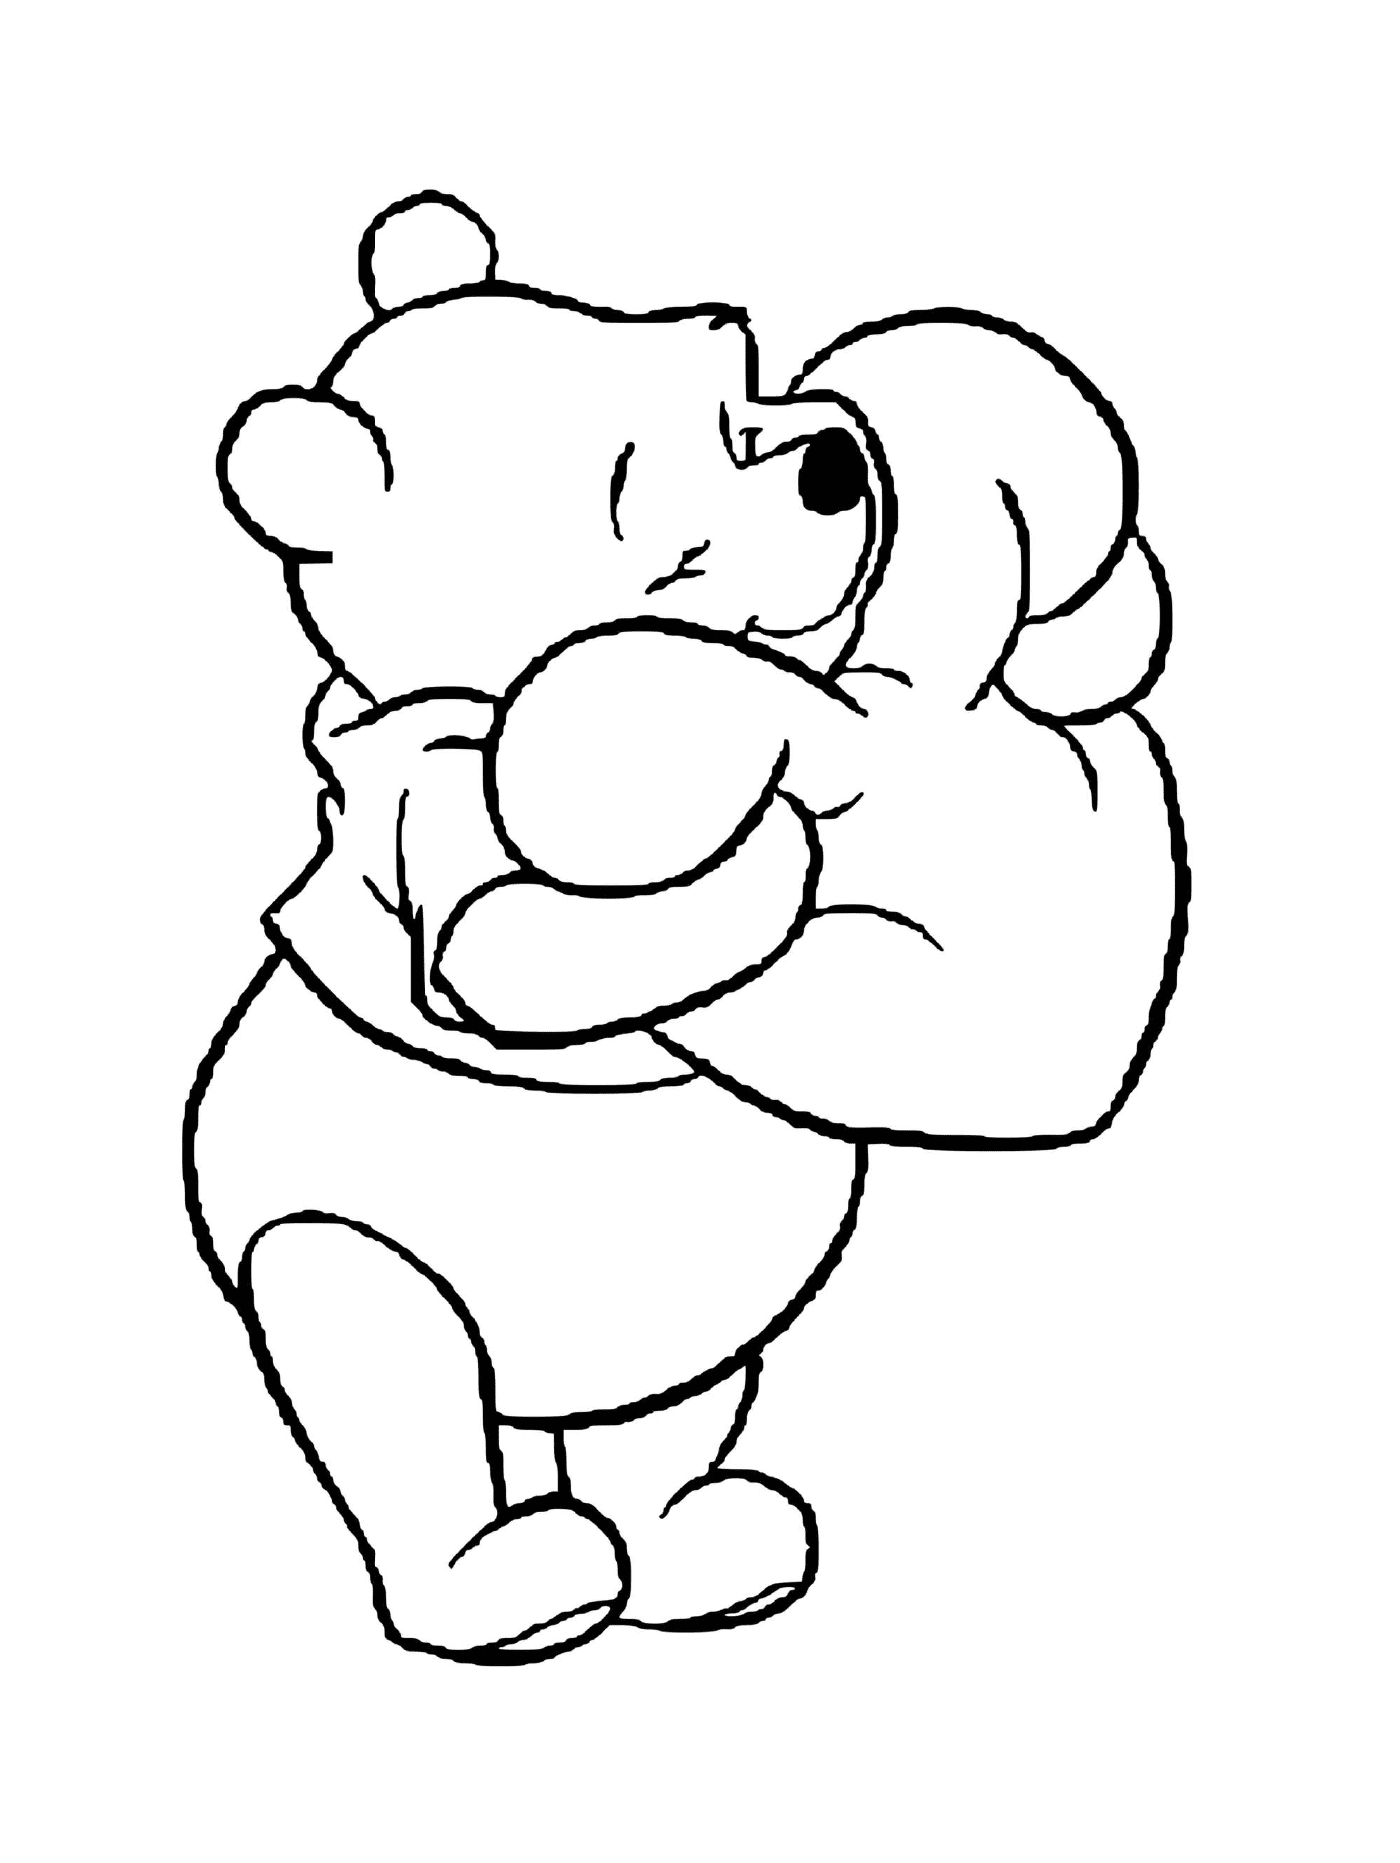  Winnie the bear receives a heart-shaped cushion 